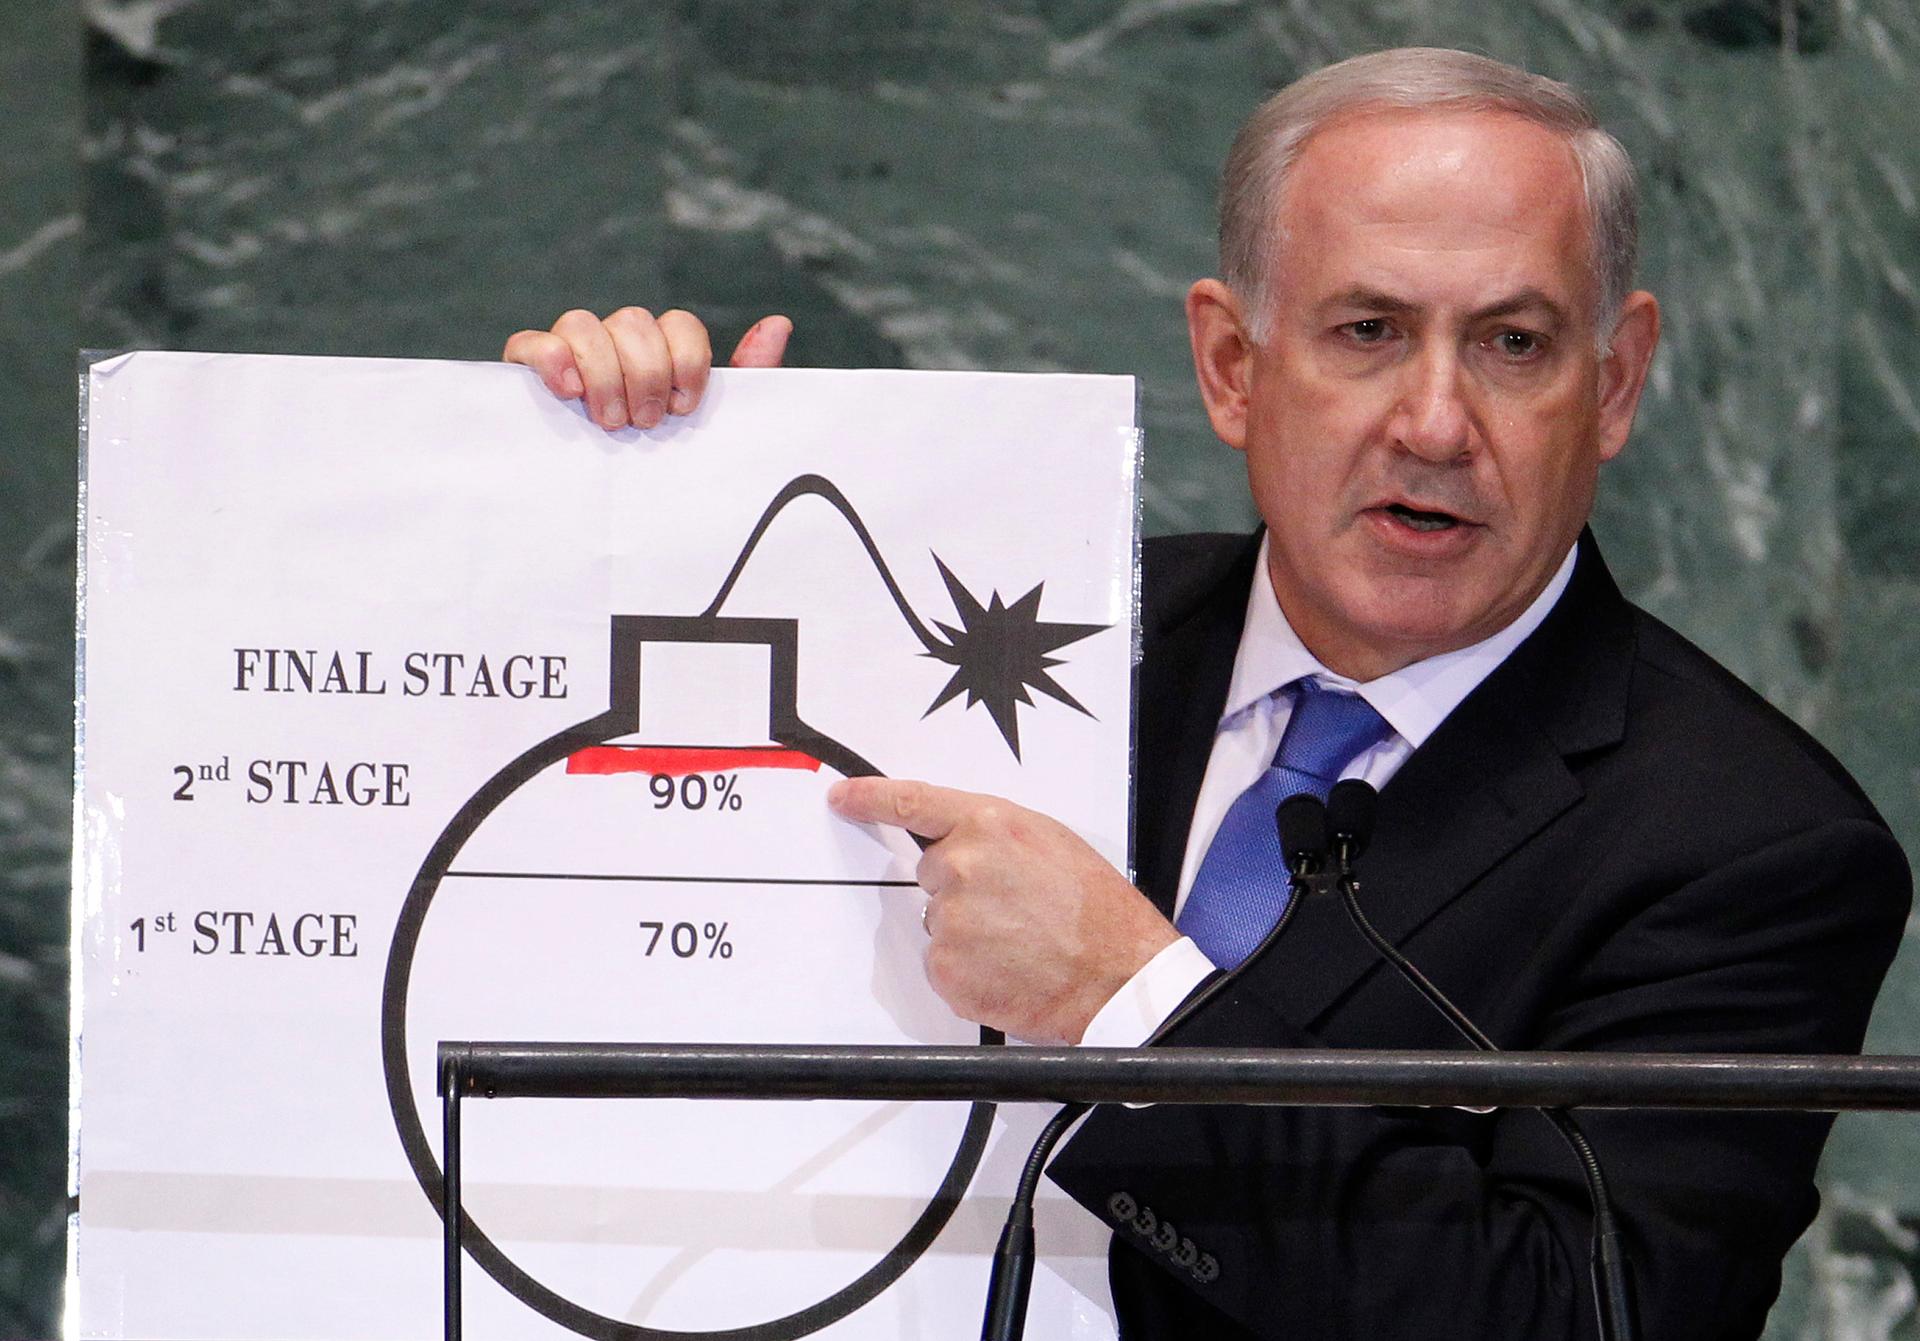 Benjamin Netanyahu at the UN in September 2012.